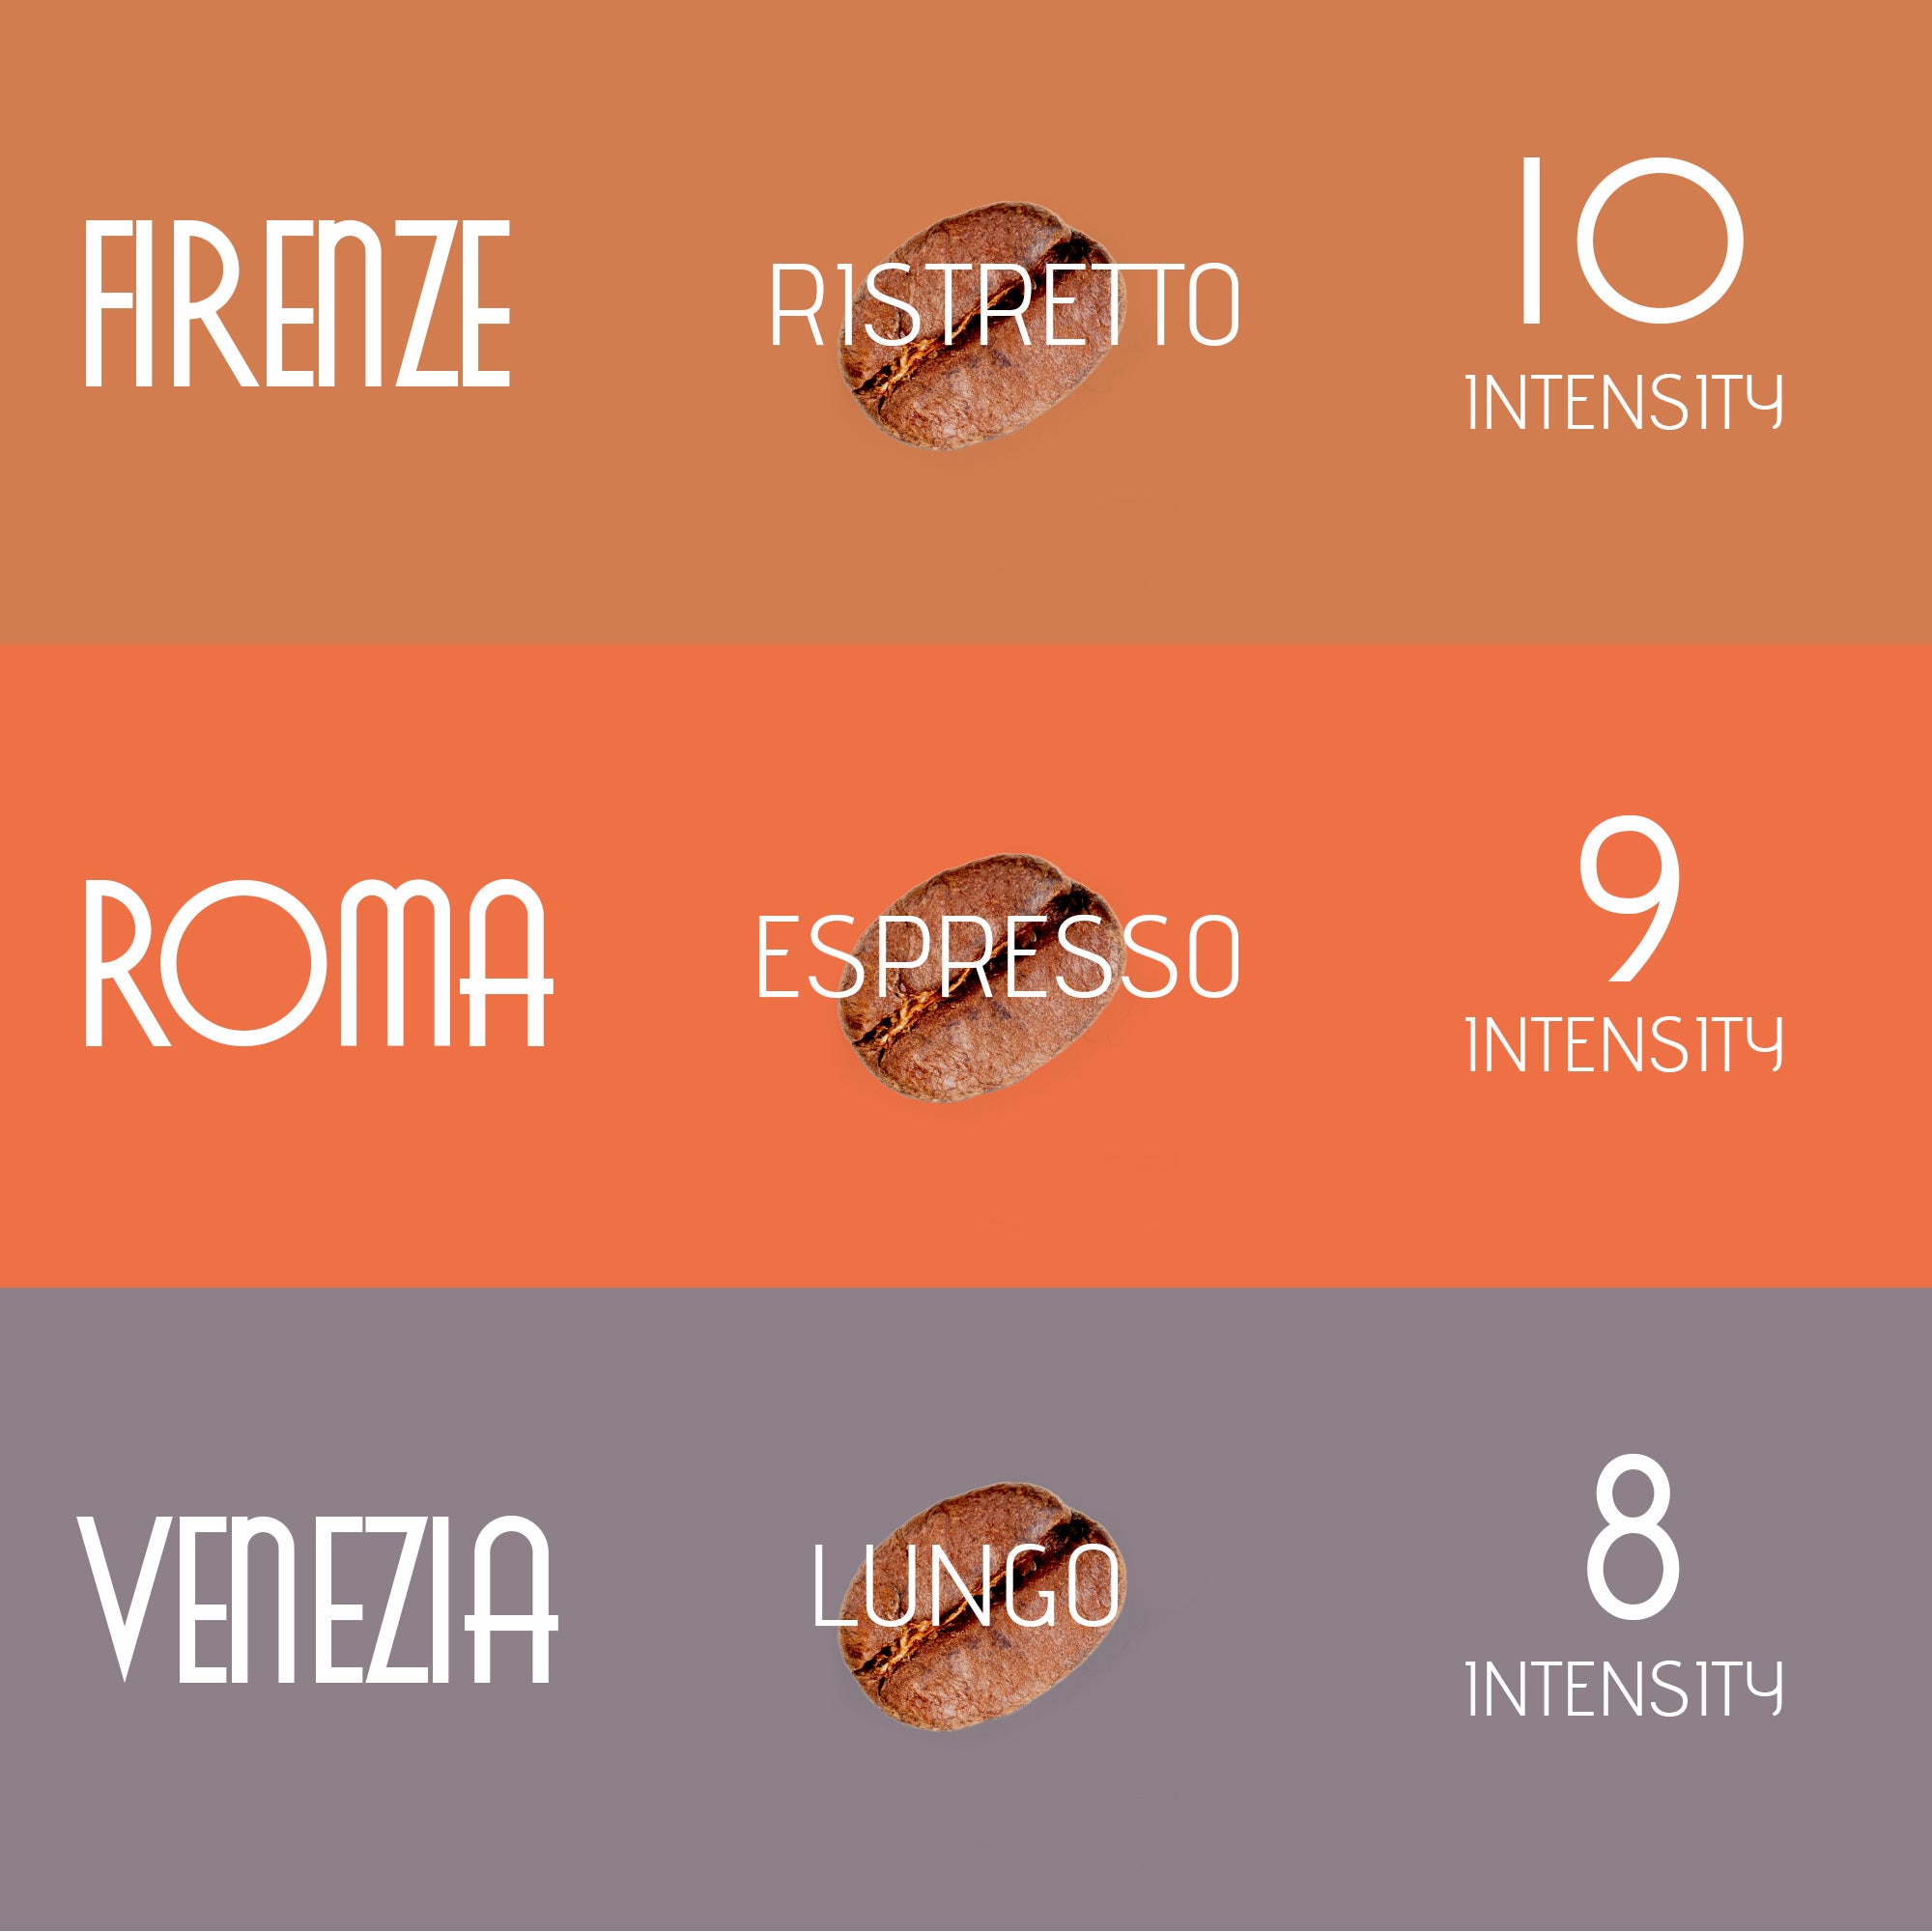 Artuzzi 120ct Espresso Variety - Ristretto, Espresso, Lungo($.38/pod)